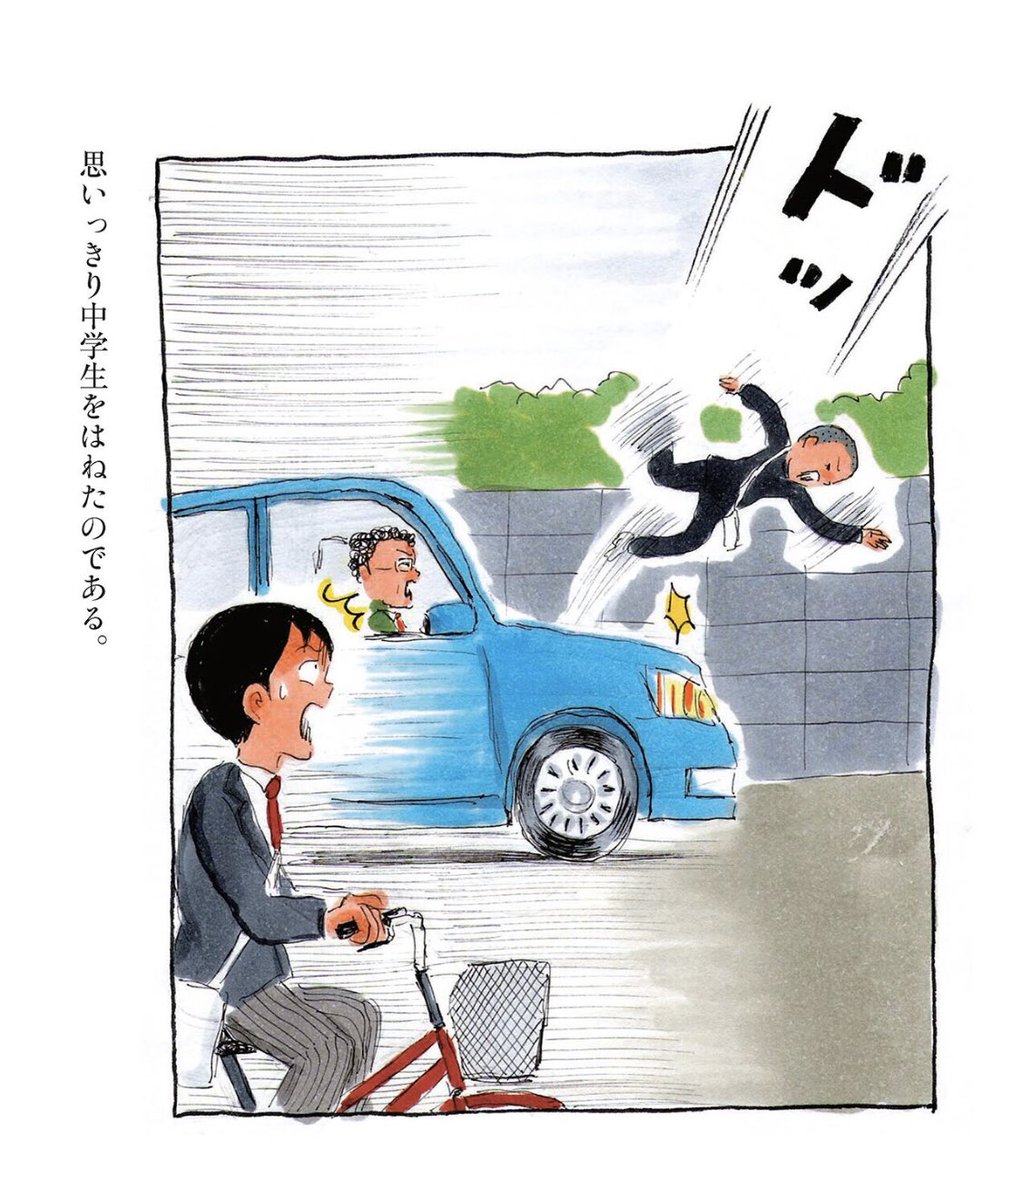 ここで突然ですが、「スーパーハイパー!バカ男子」(イーストプレス刊)より、「藤井先生」のエピソードをお送りします。

其の一。 